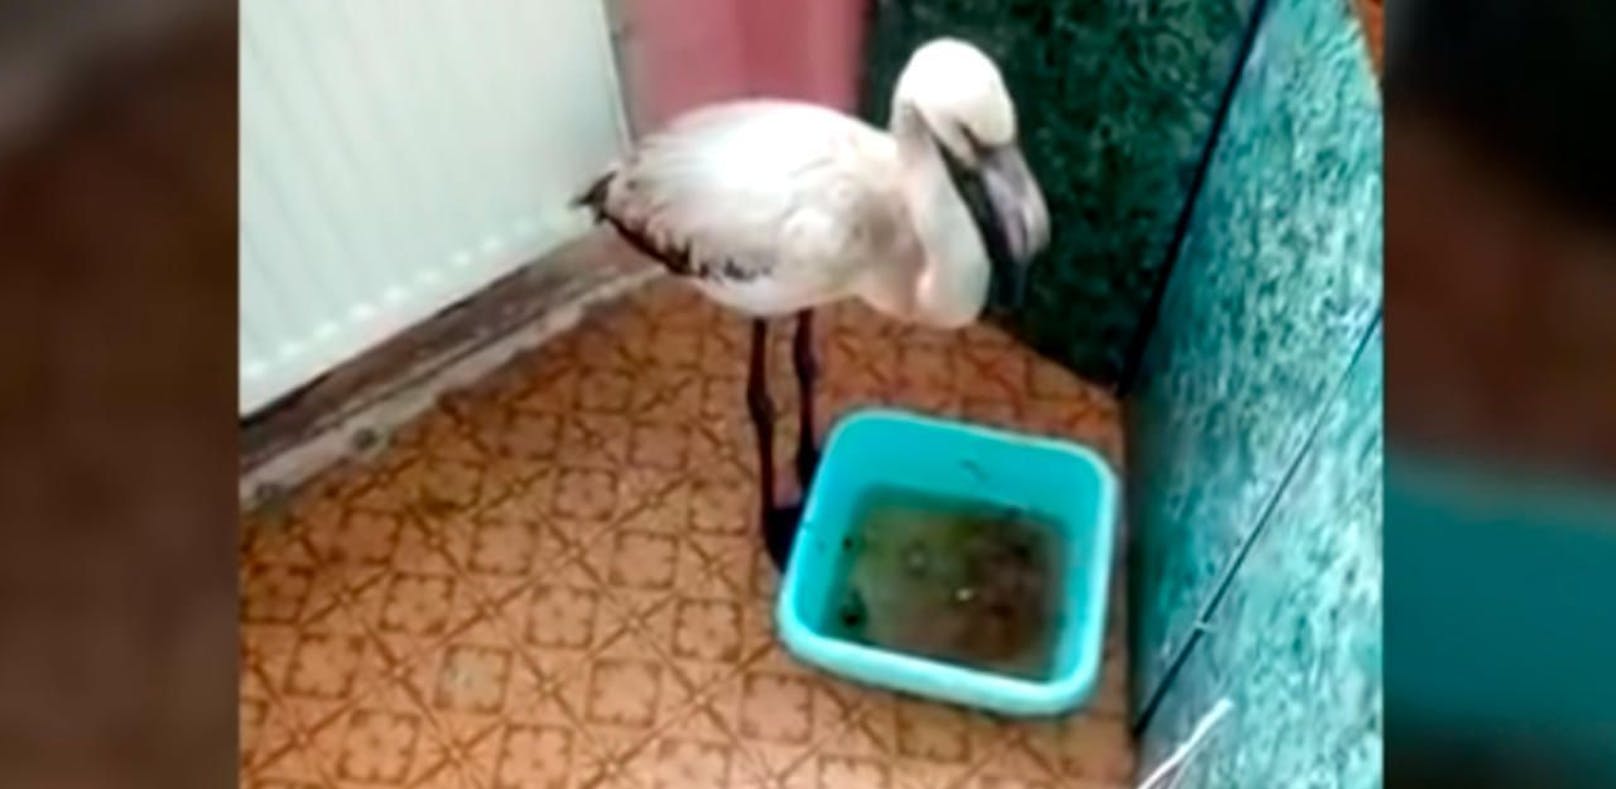 Flamingo biegt falsch ab, crasht in Sibirien